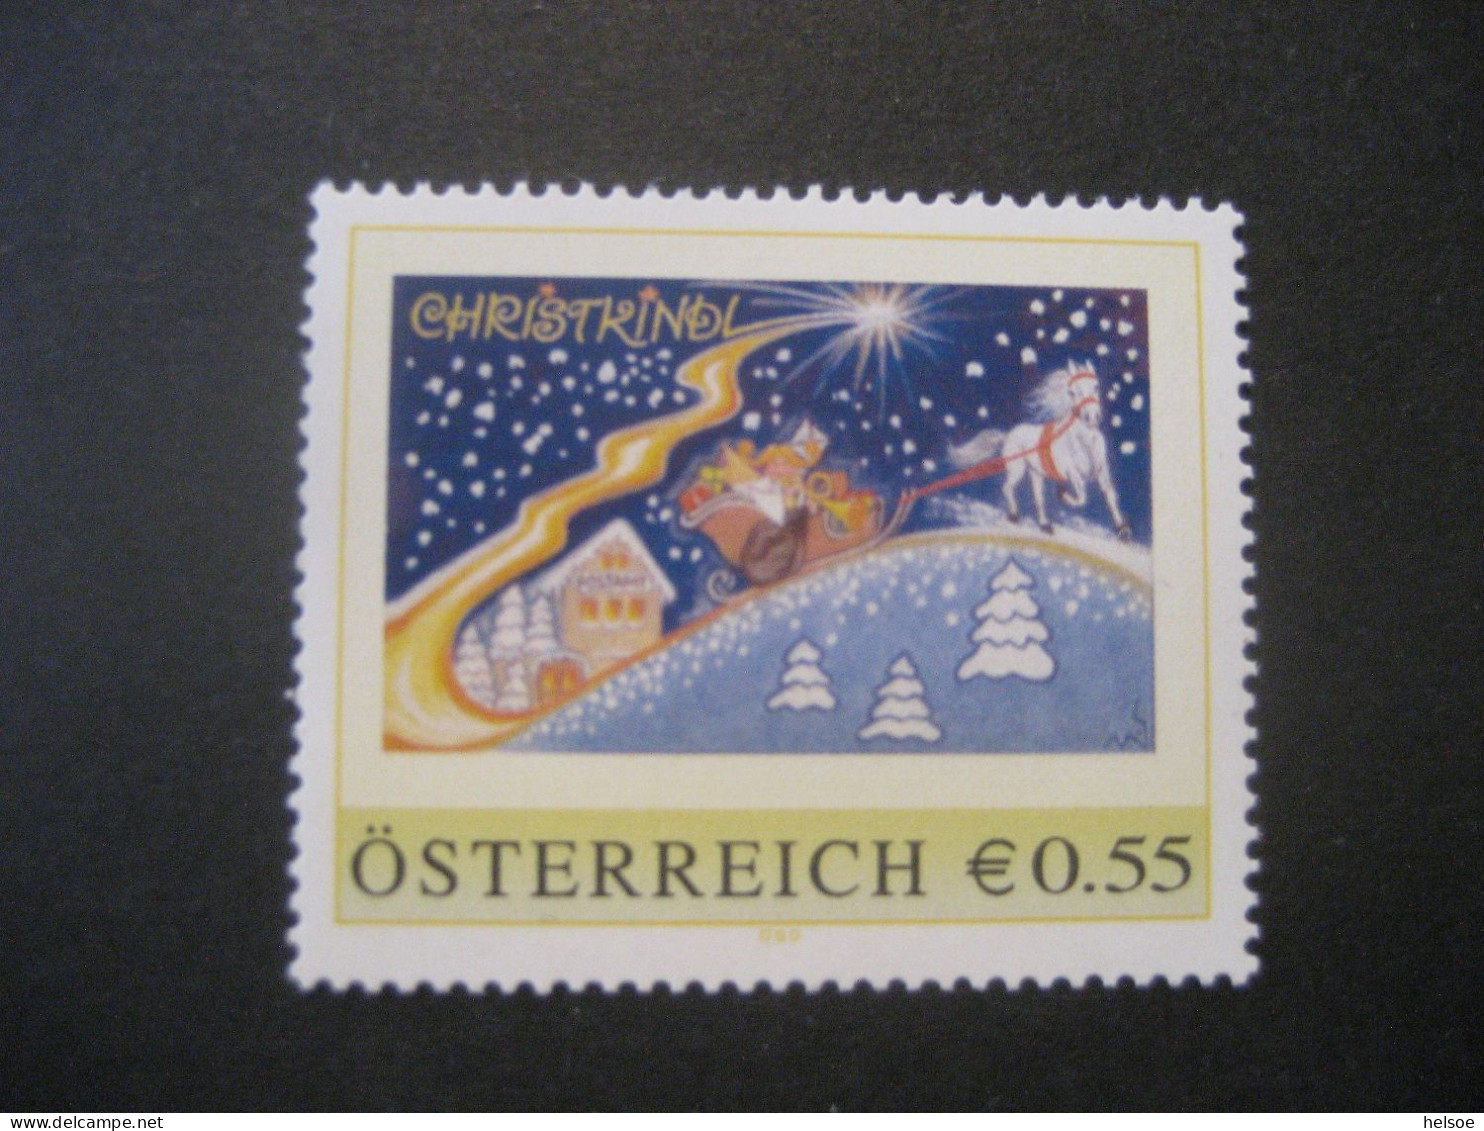 Österreich- PM ME-1.9 Postamt Christkindl Ungebraucht - Francobolli Personalizzati